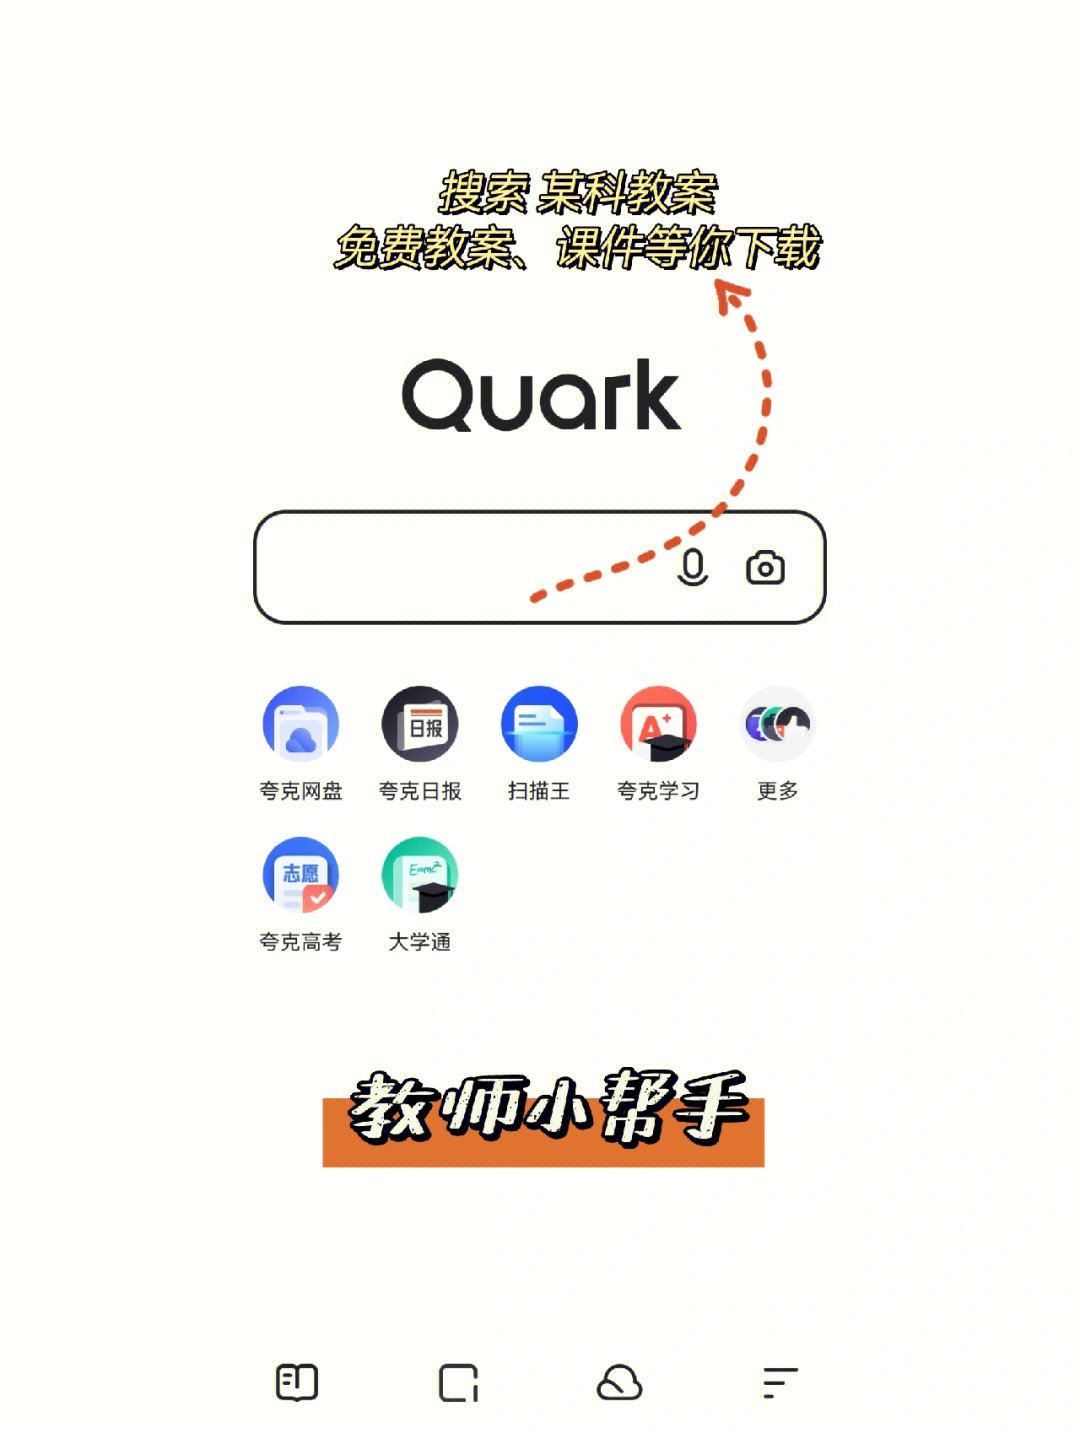 夸克浏览器真的神仙软件,堪称用过所有浏览器最好用的,功能最强大的!